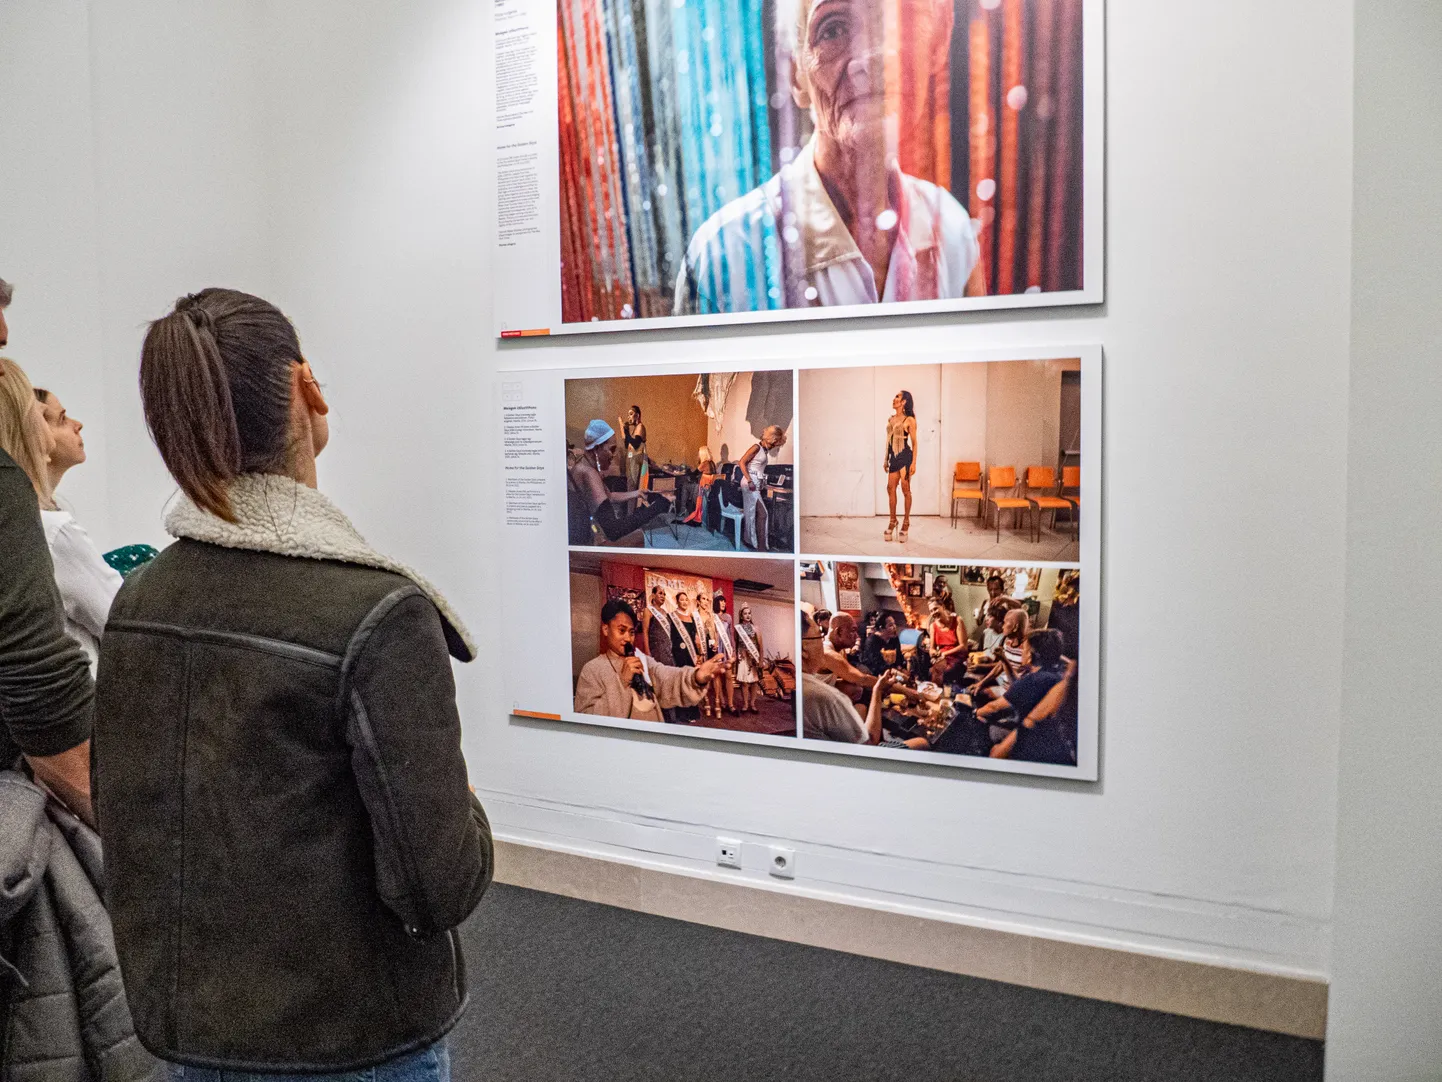 Ungari rahvusmuuseumi külastajad vaatavad maailma pressifoto näitusel LGBTQ-teemalisi pilte, mis viisid muuseumijuhi vallandamiseni.